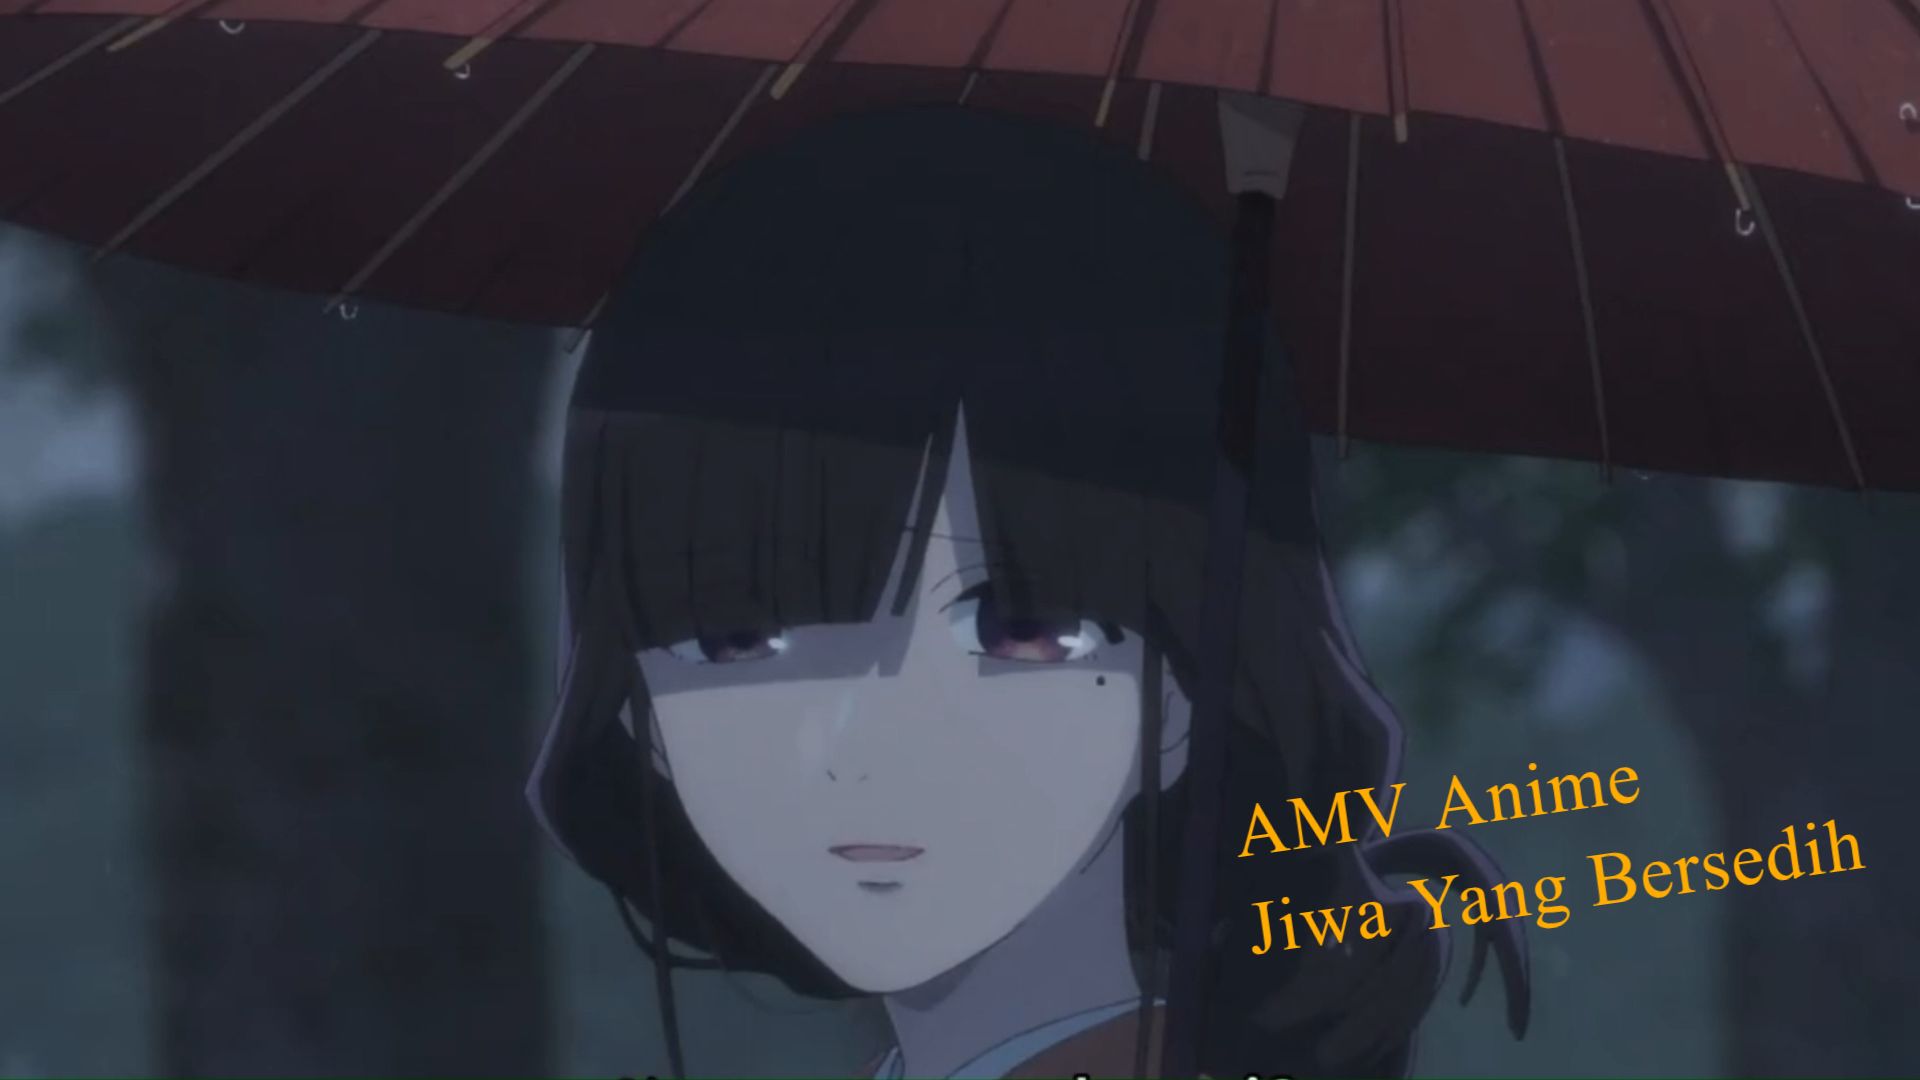 Fly -「AMV」- Anime MV 